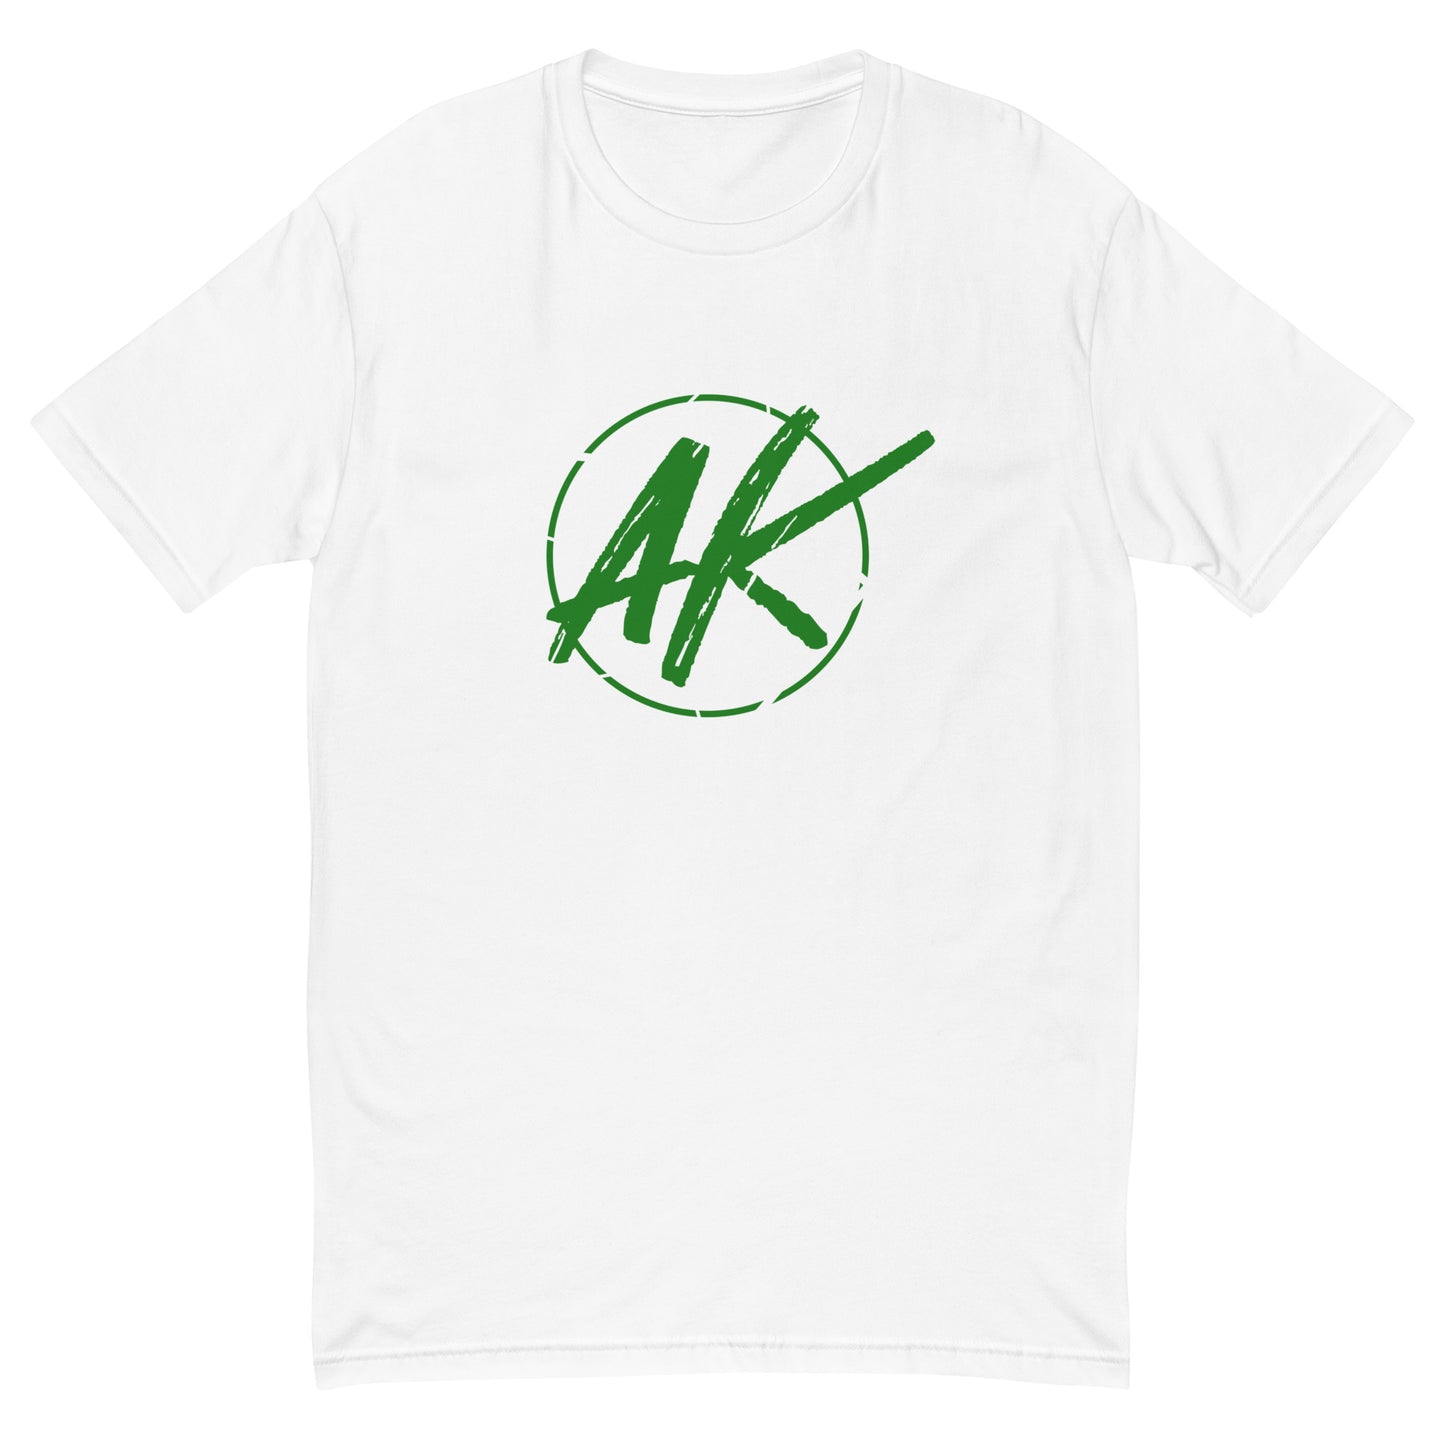 M| AK (green)